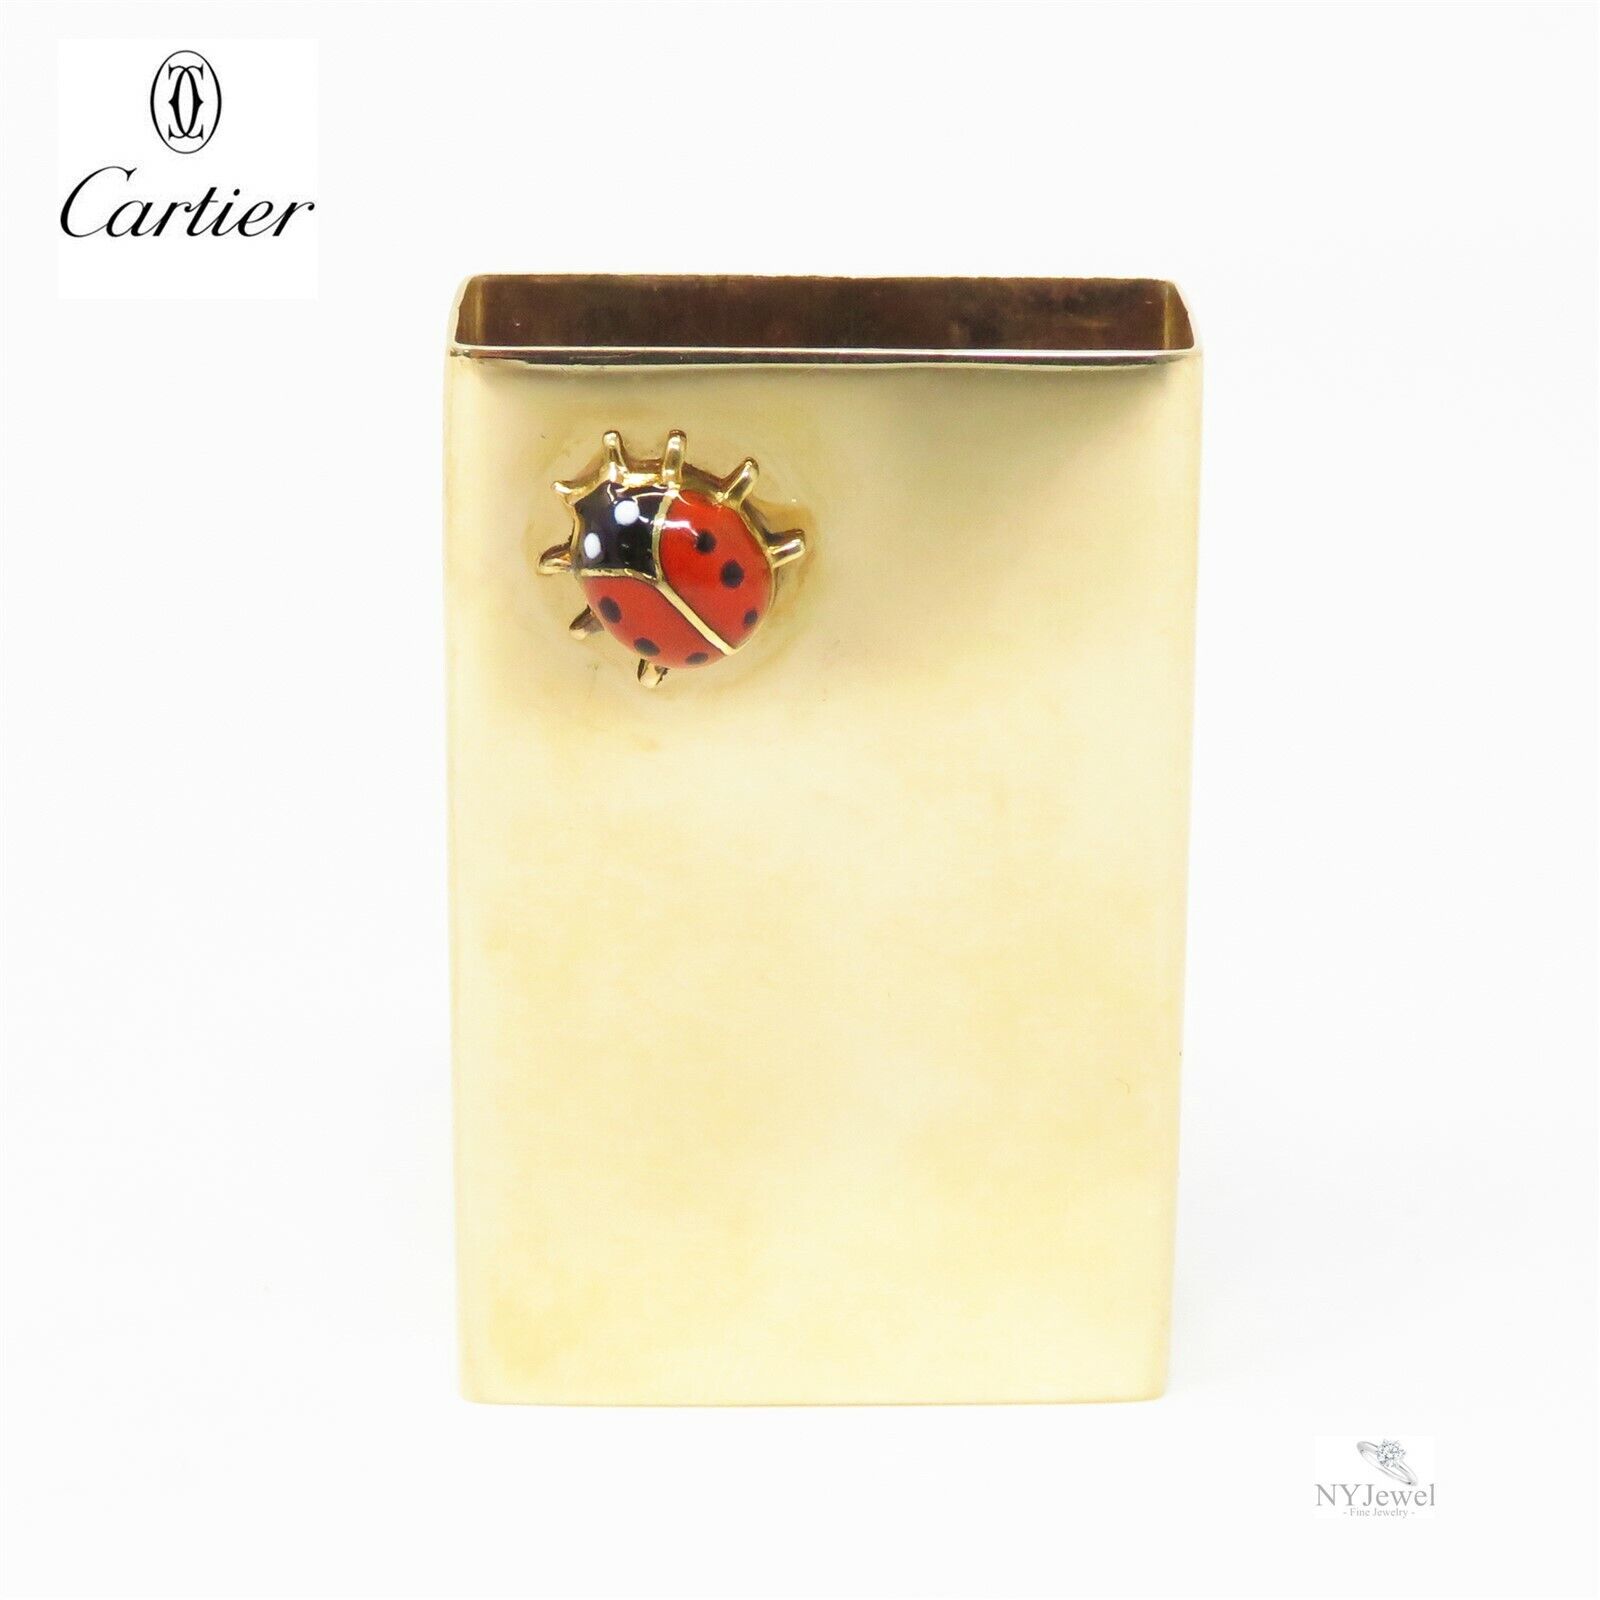 NYJEWEL Cartier 14k Yellow Gold Enamel Ladybug Matchbook Box